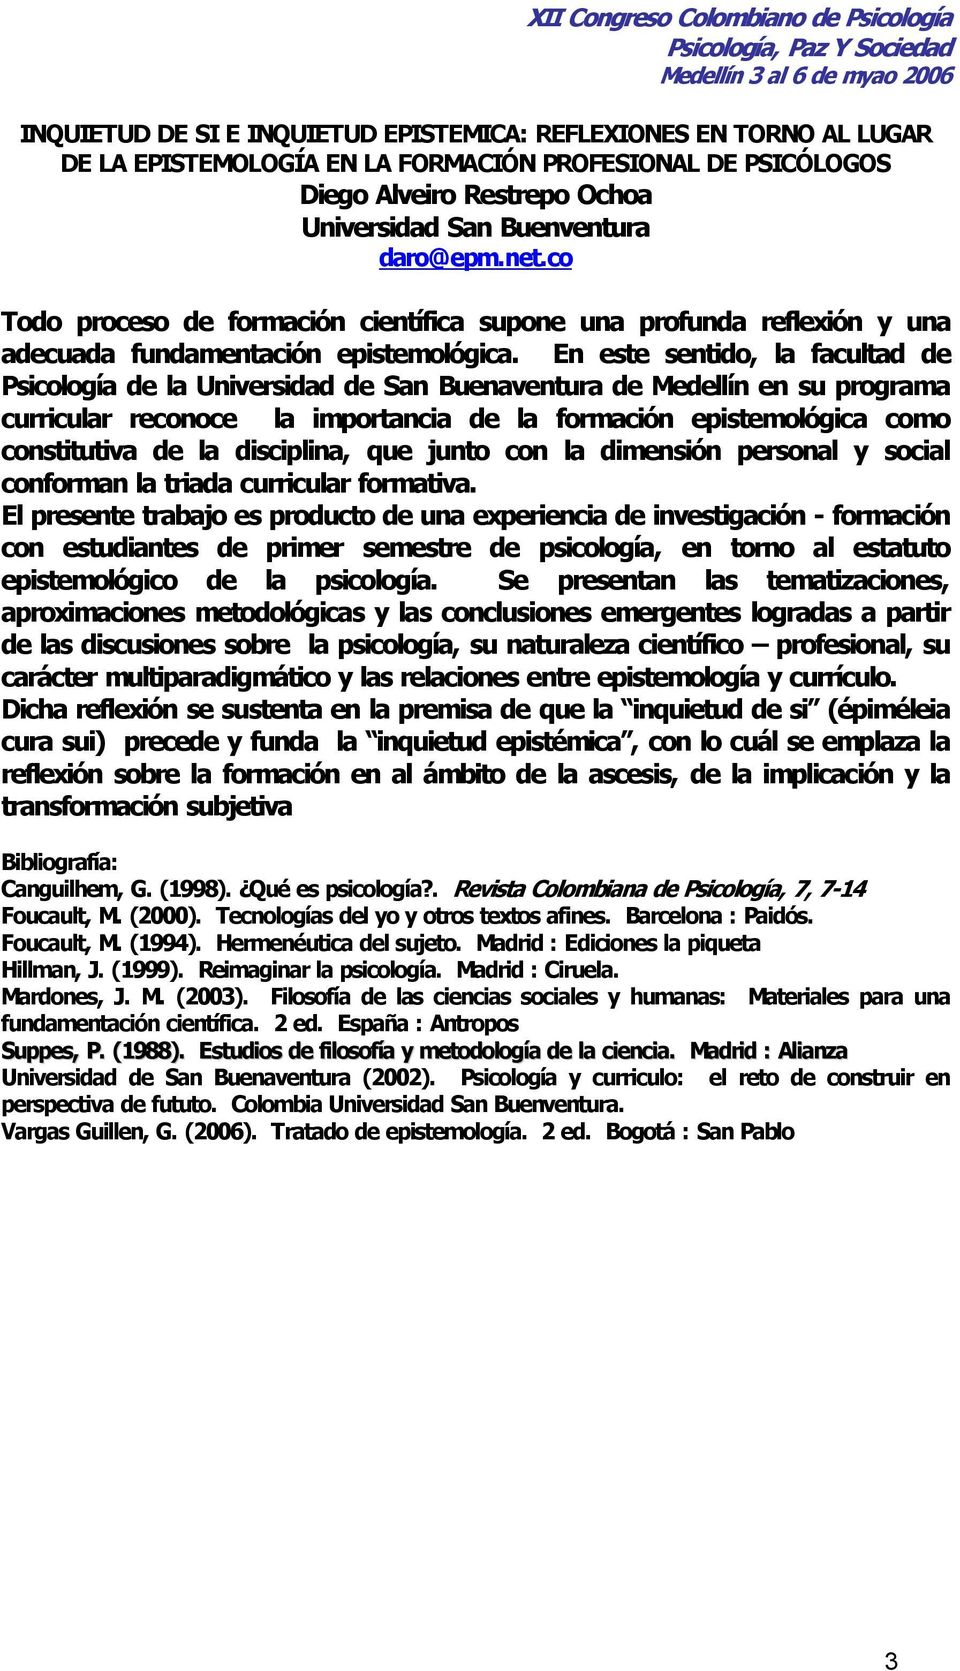 En este sentido, la facultad de Psicología de la Universidad de San Buenaventura de Medellín en su programa curricular reconoce la importancia de la formación epistemológica como constitutiva de la